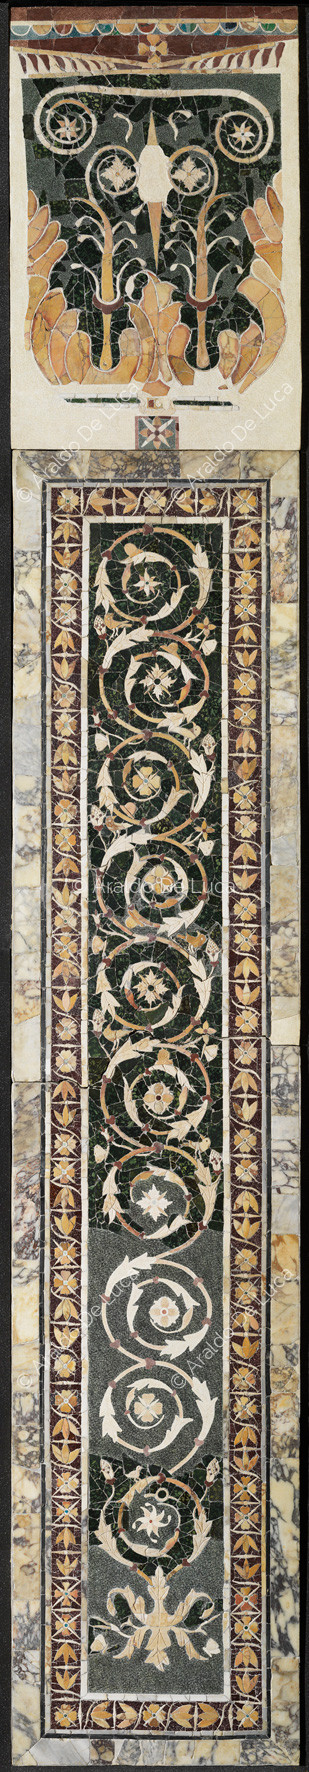 Pilastre avec la branche de fleurs et de bord de fleurs de lotus - Opus Sectile de Porta Marina, particulier